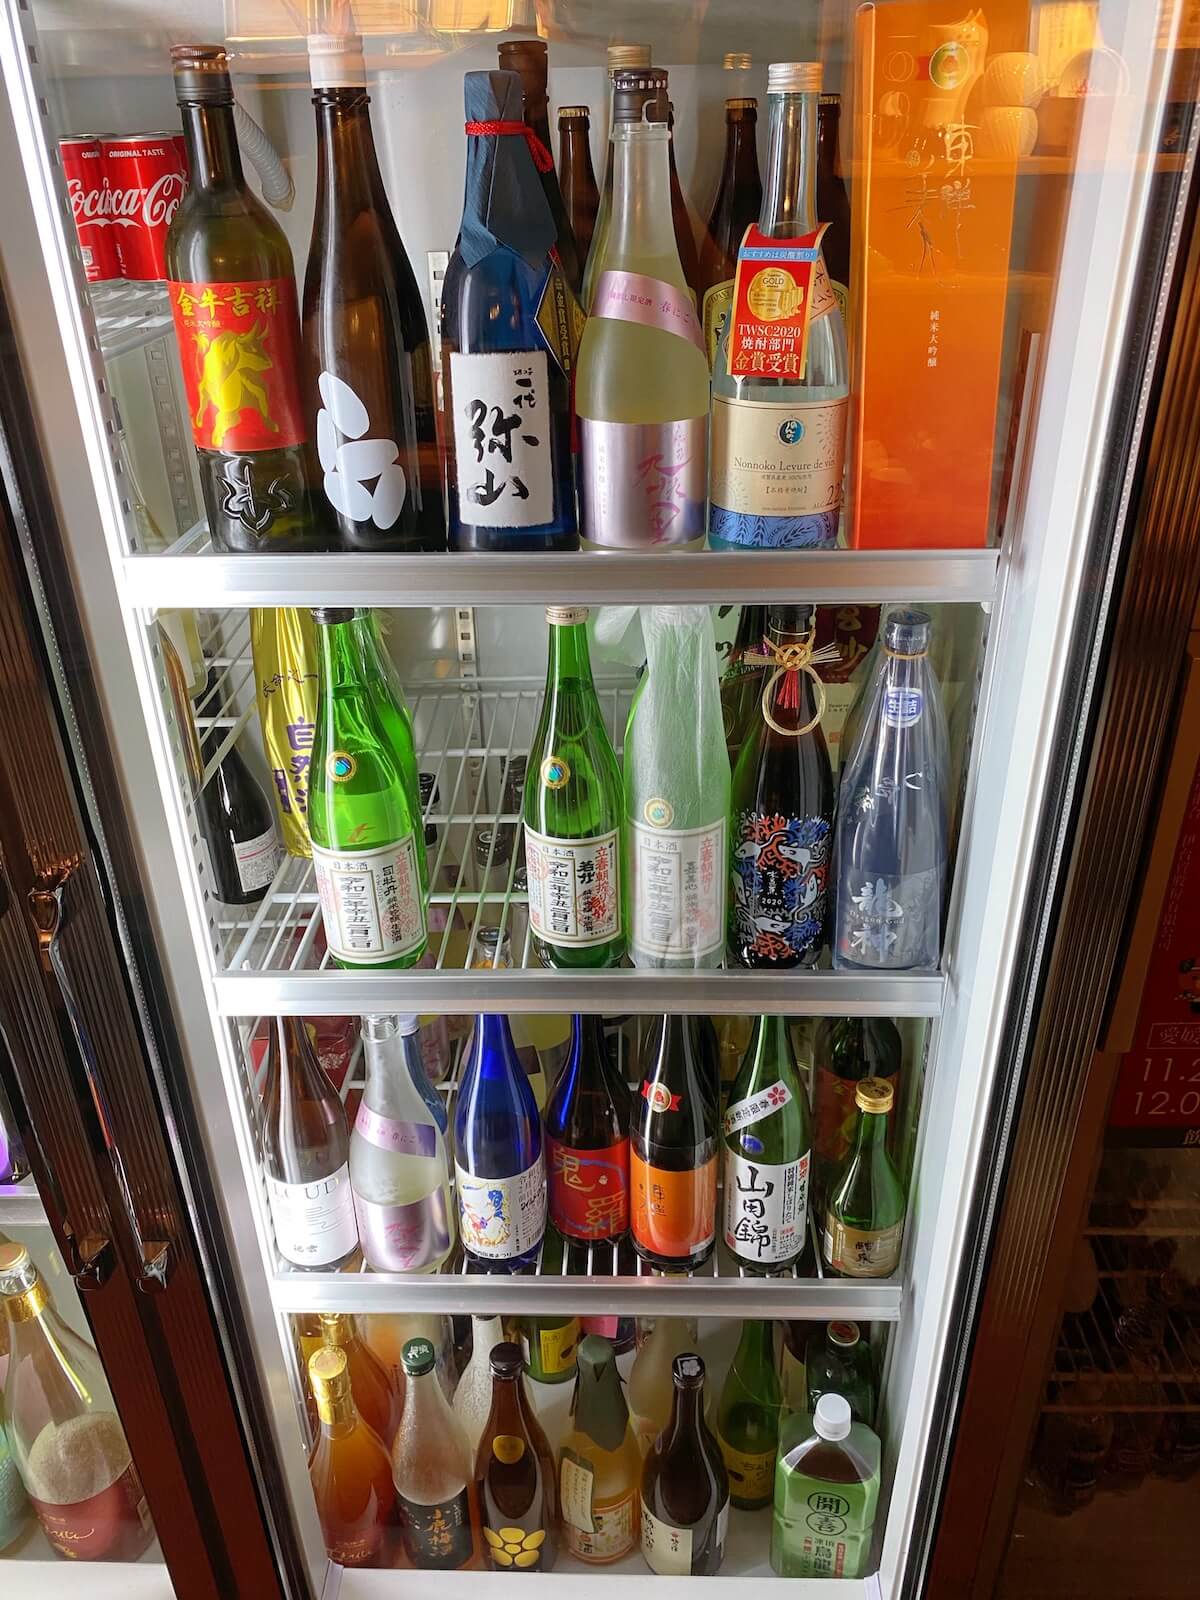 Sake refrigerator (right)